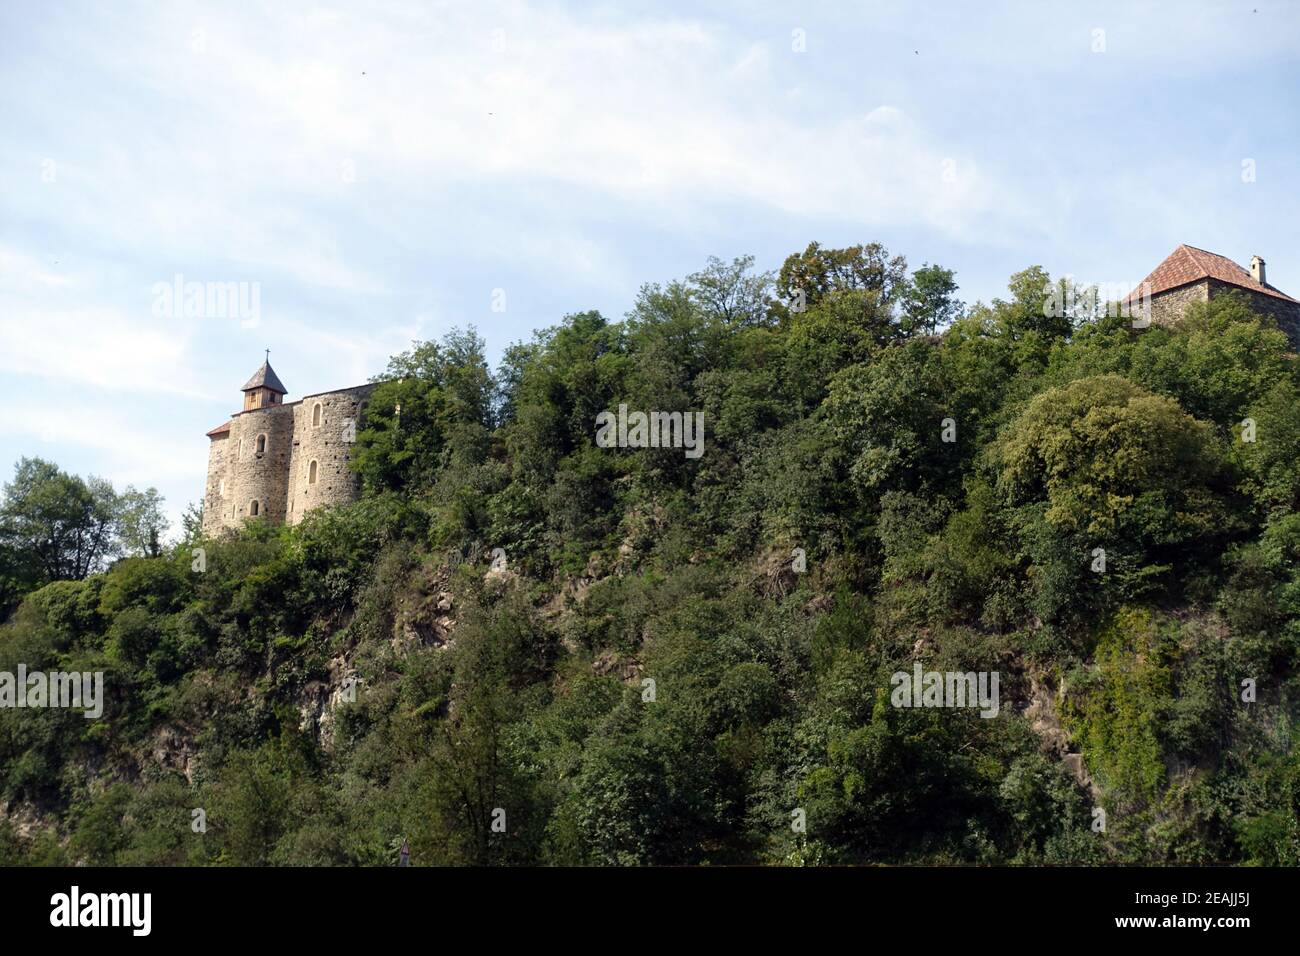 Zenoburg, mittelalterliche Burganlage hoch Ã¼ber der Stadt Merano Foto Stock